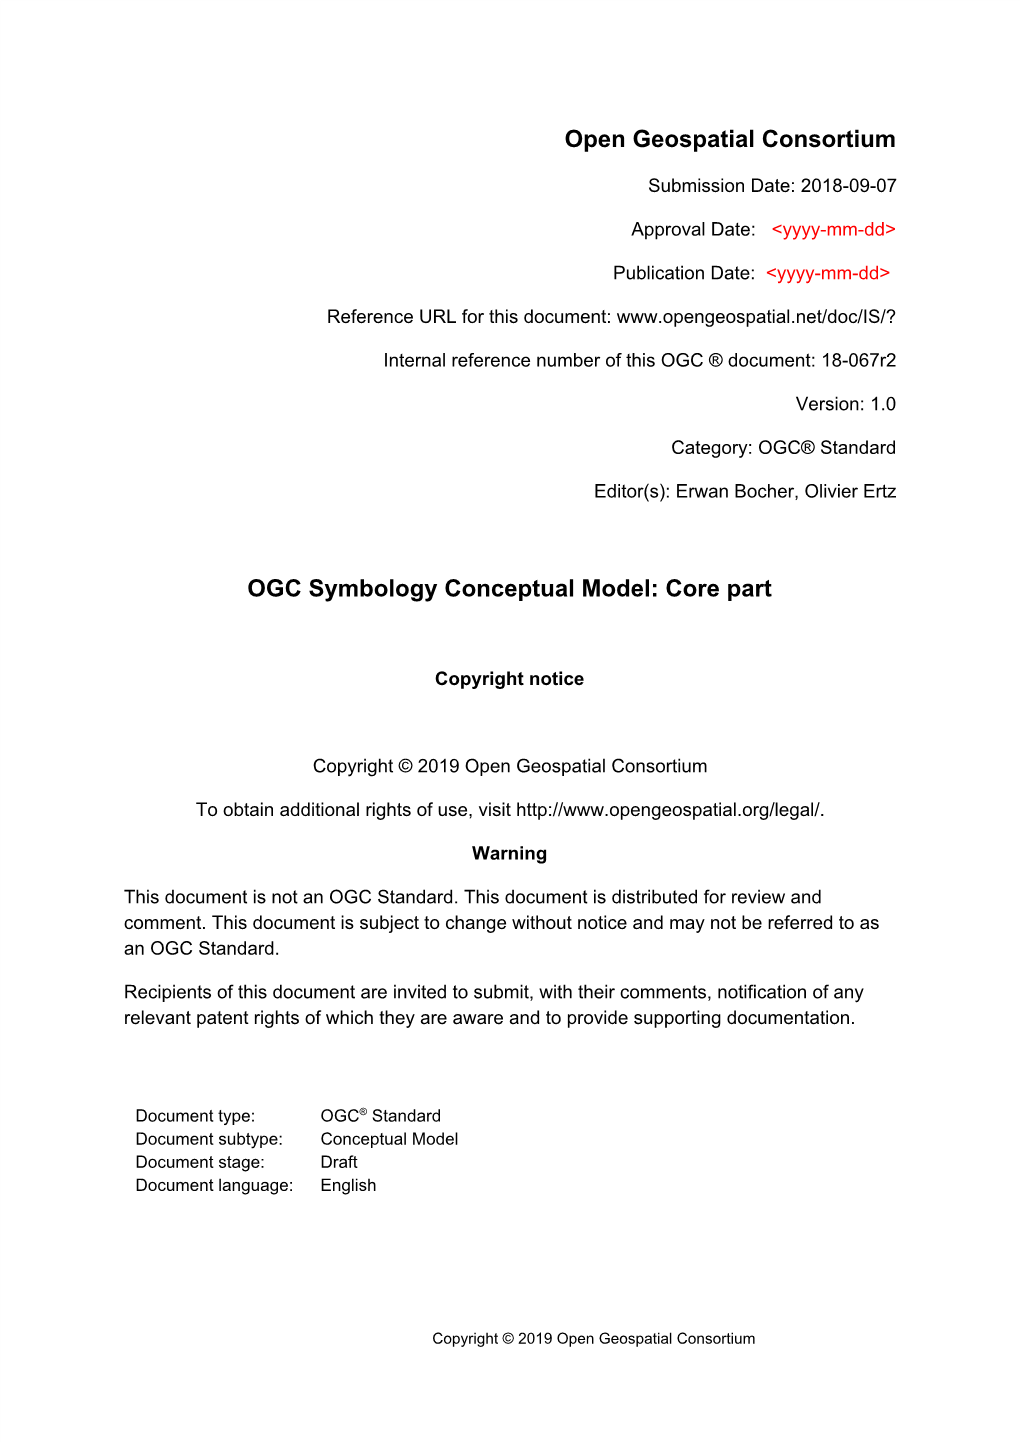 OGC Symbology Conceptual Model: Core Part